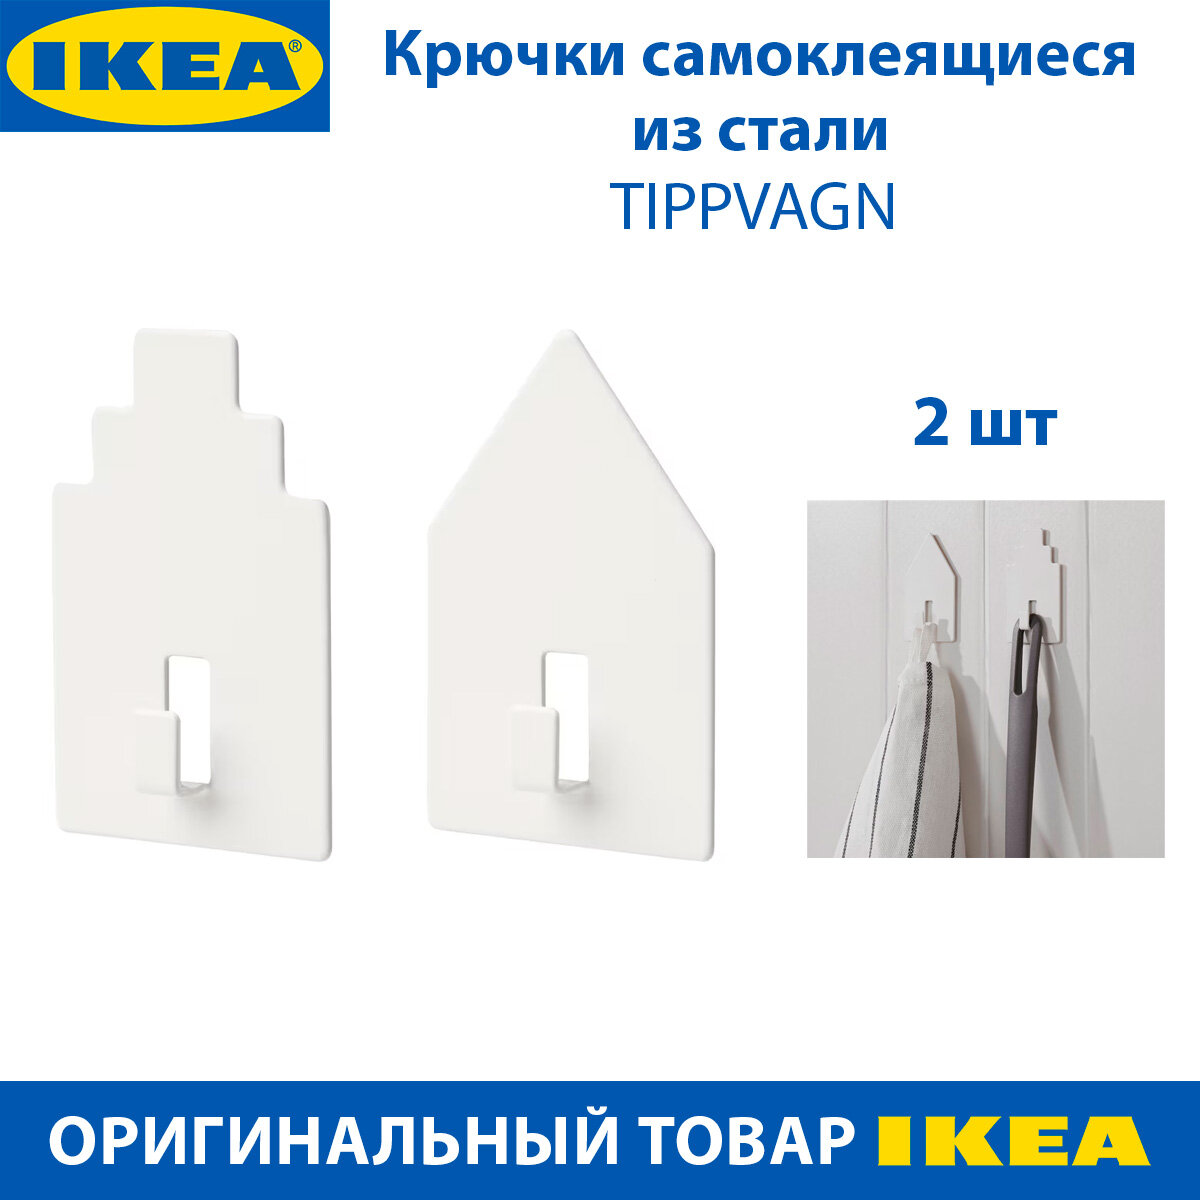 Крючок IKEA TIPPVAGN (типпвагн), самоклеящийся, из стали, цвет белый, 2 шт в наборе